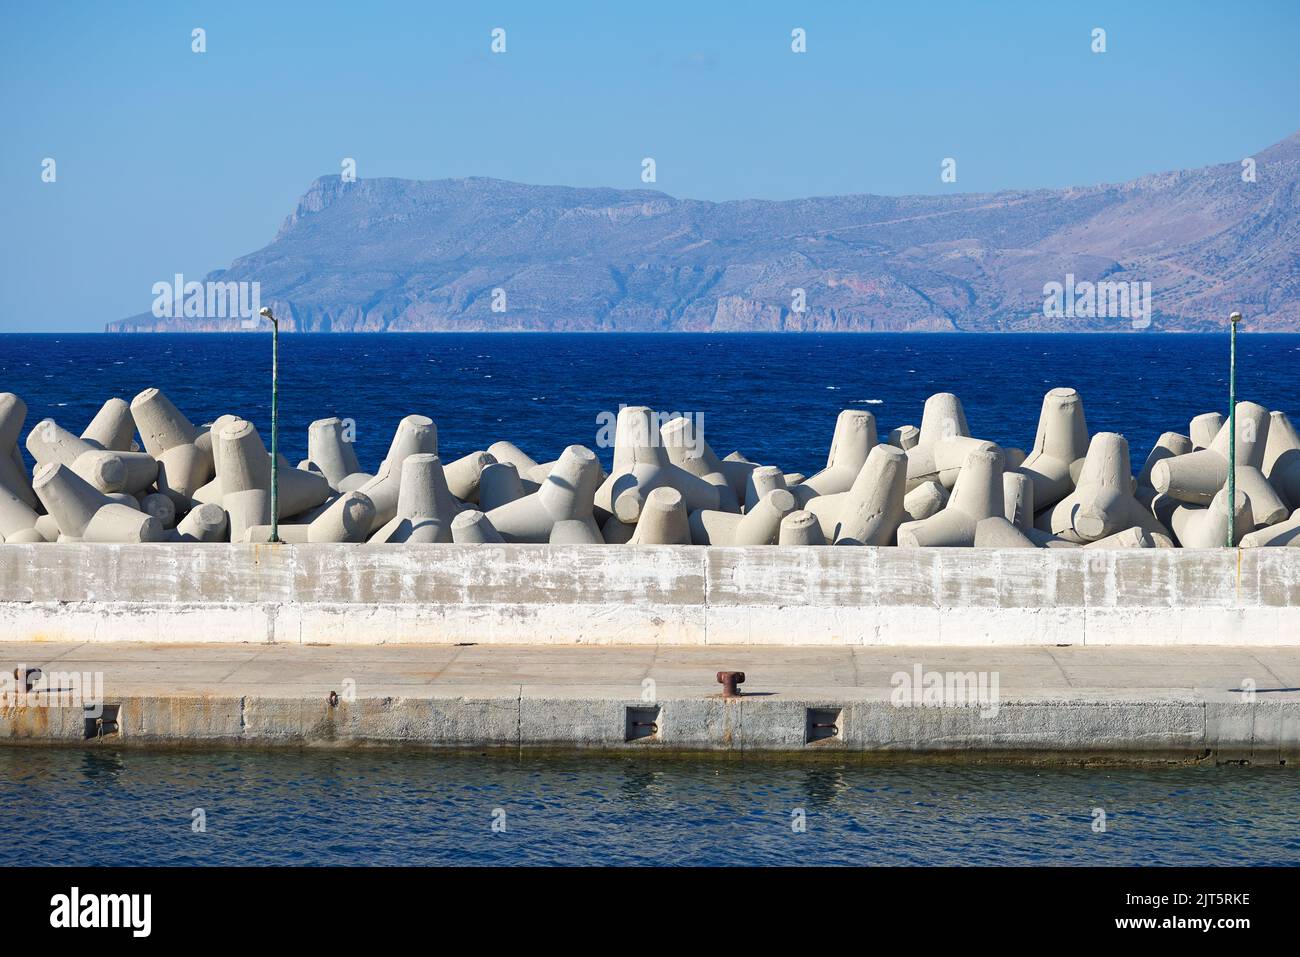 Tetrapoden-Wellenbrecher im Hafen und im blauen Meer - Kreta Insel Griechenland Stockfoto